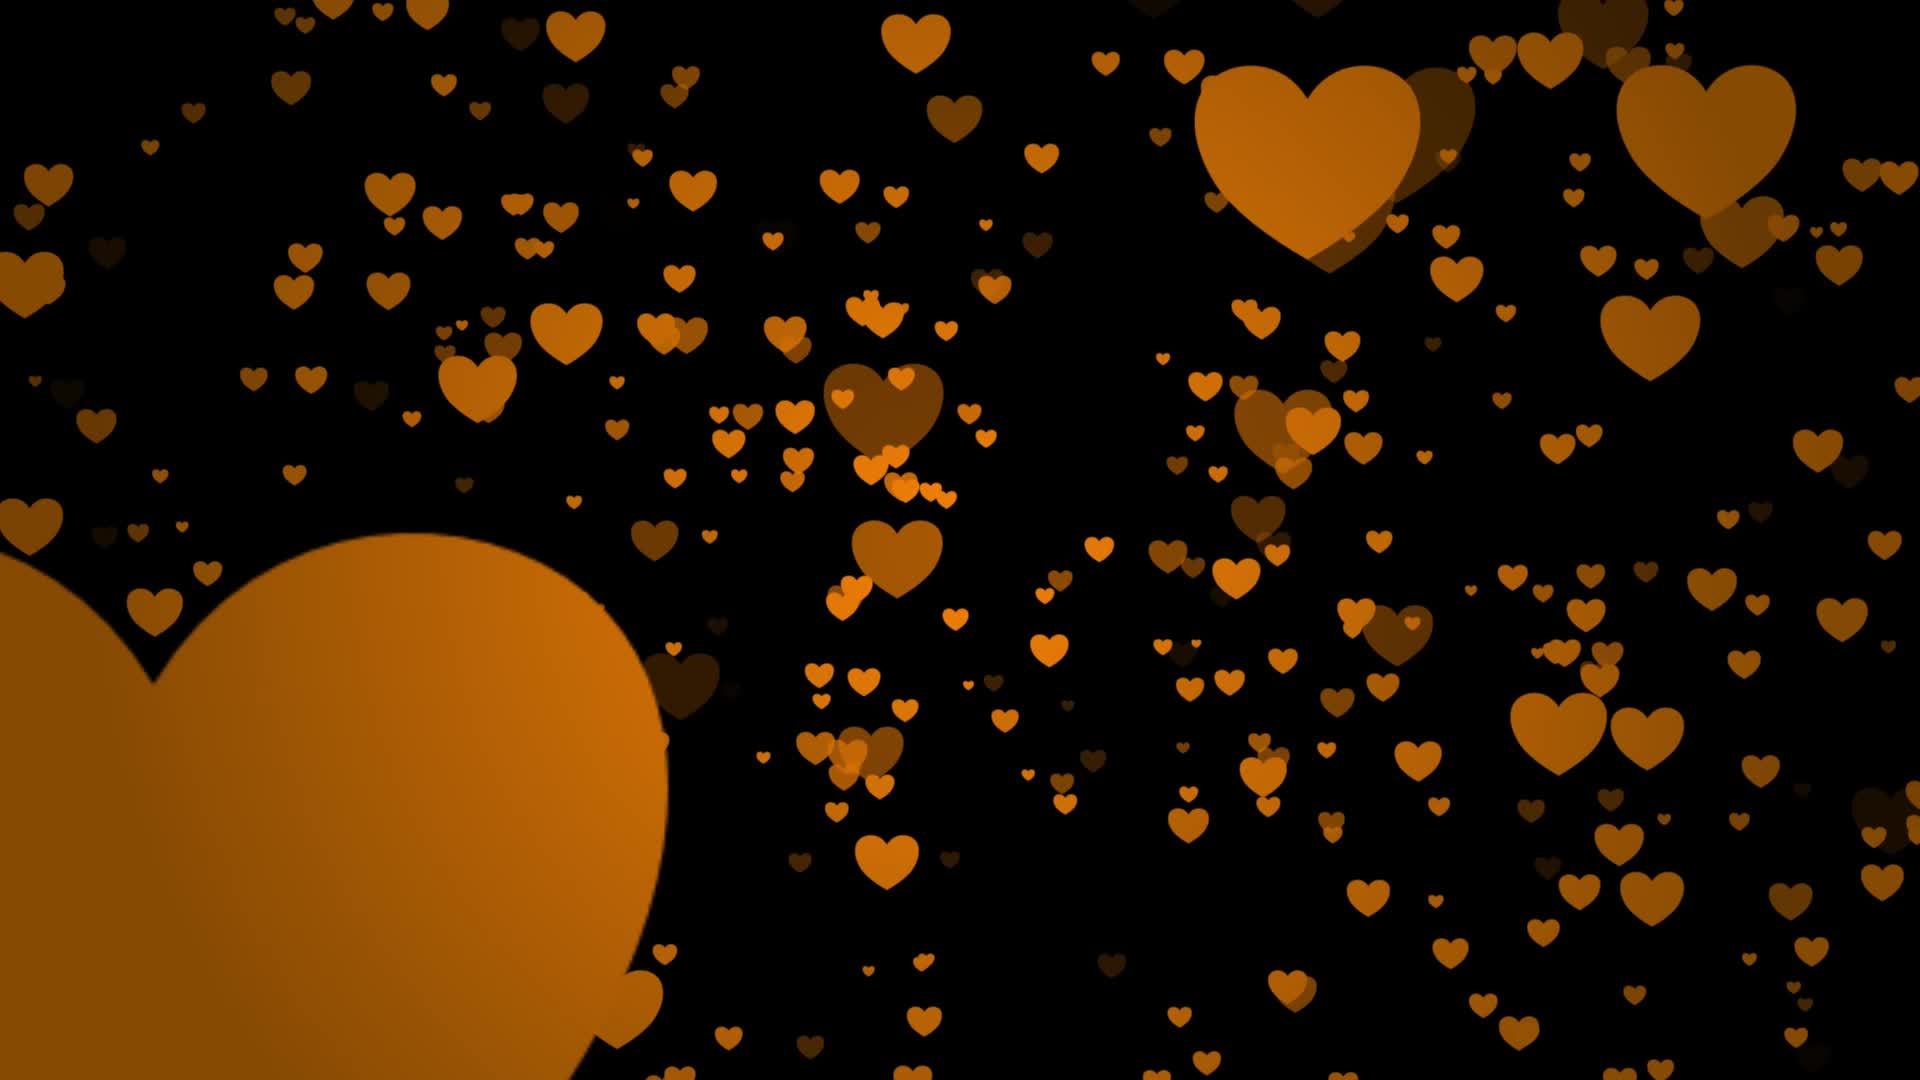 Hình nền hoạt hình yêu thương cam với hình trái tim mang đến cho bạn cảm giác ấm áp và tình yêu đầy tràn. Hãy xem ngay để tìm lại niềm tin vào tình yêu của bạn và tận hưởng trọn vẹn những khoảnh khắc lãng mạn cùng người mình yêu thương.